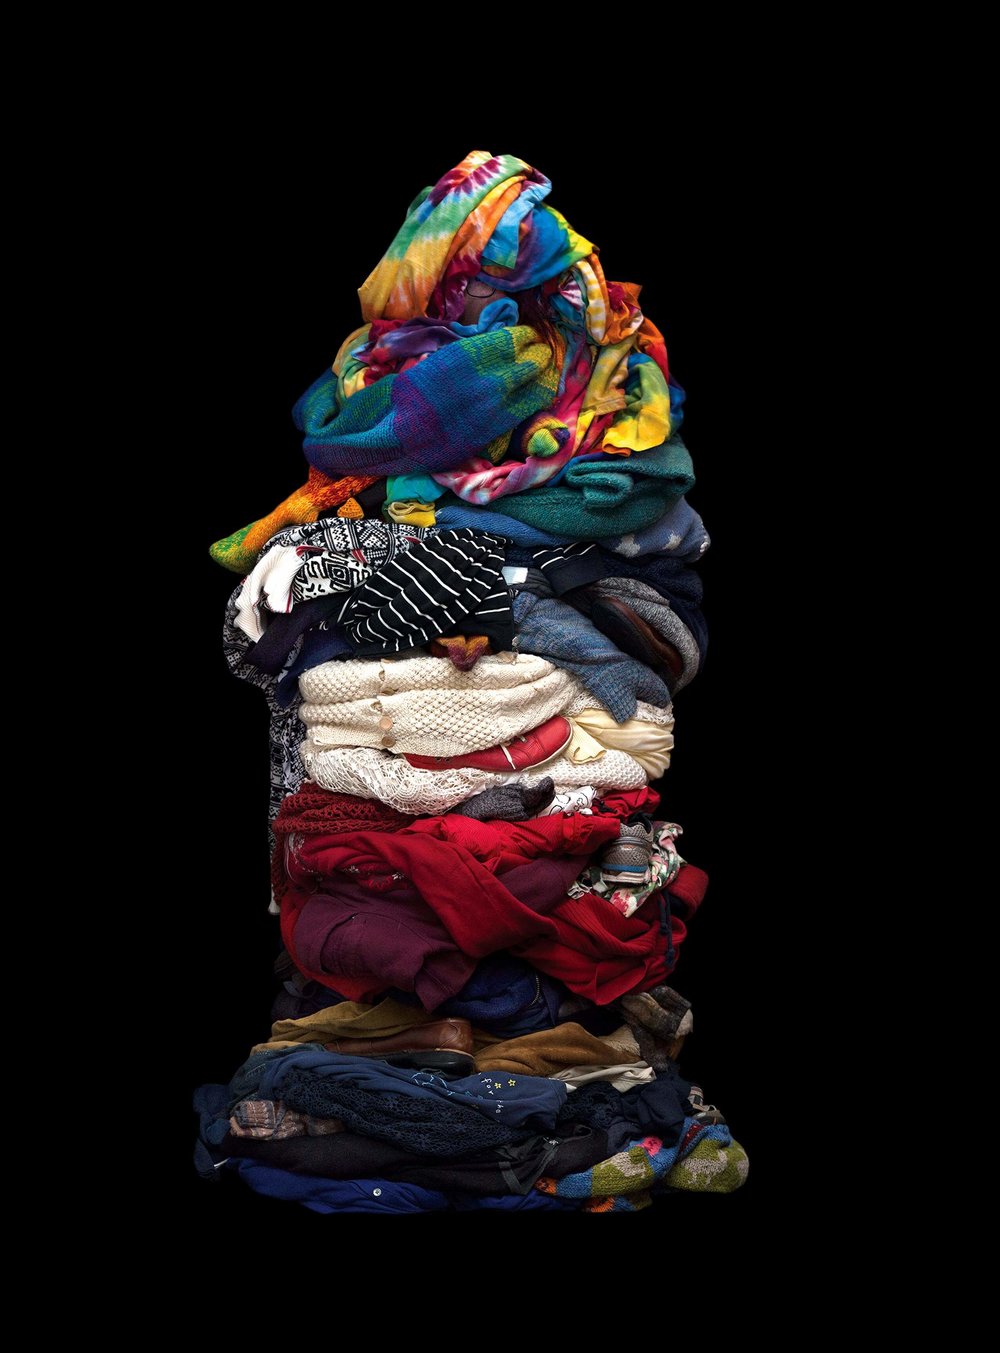 13 3 Jak wyglądałbyś, gdybyś założył swoje wszystkie ubrania na raz?